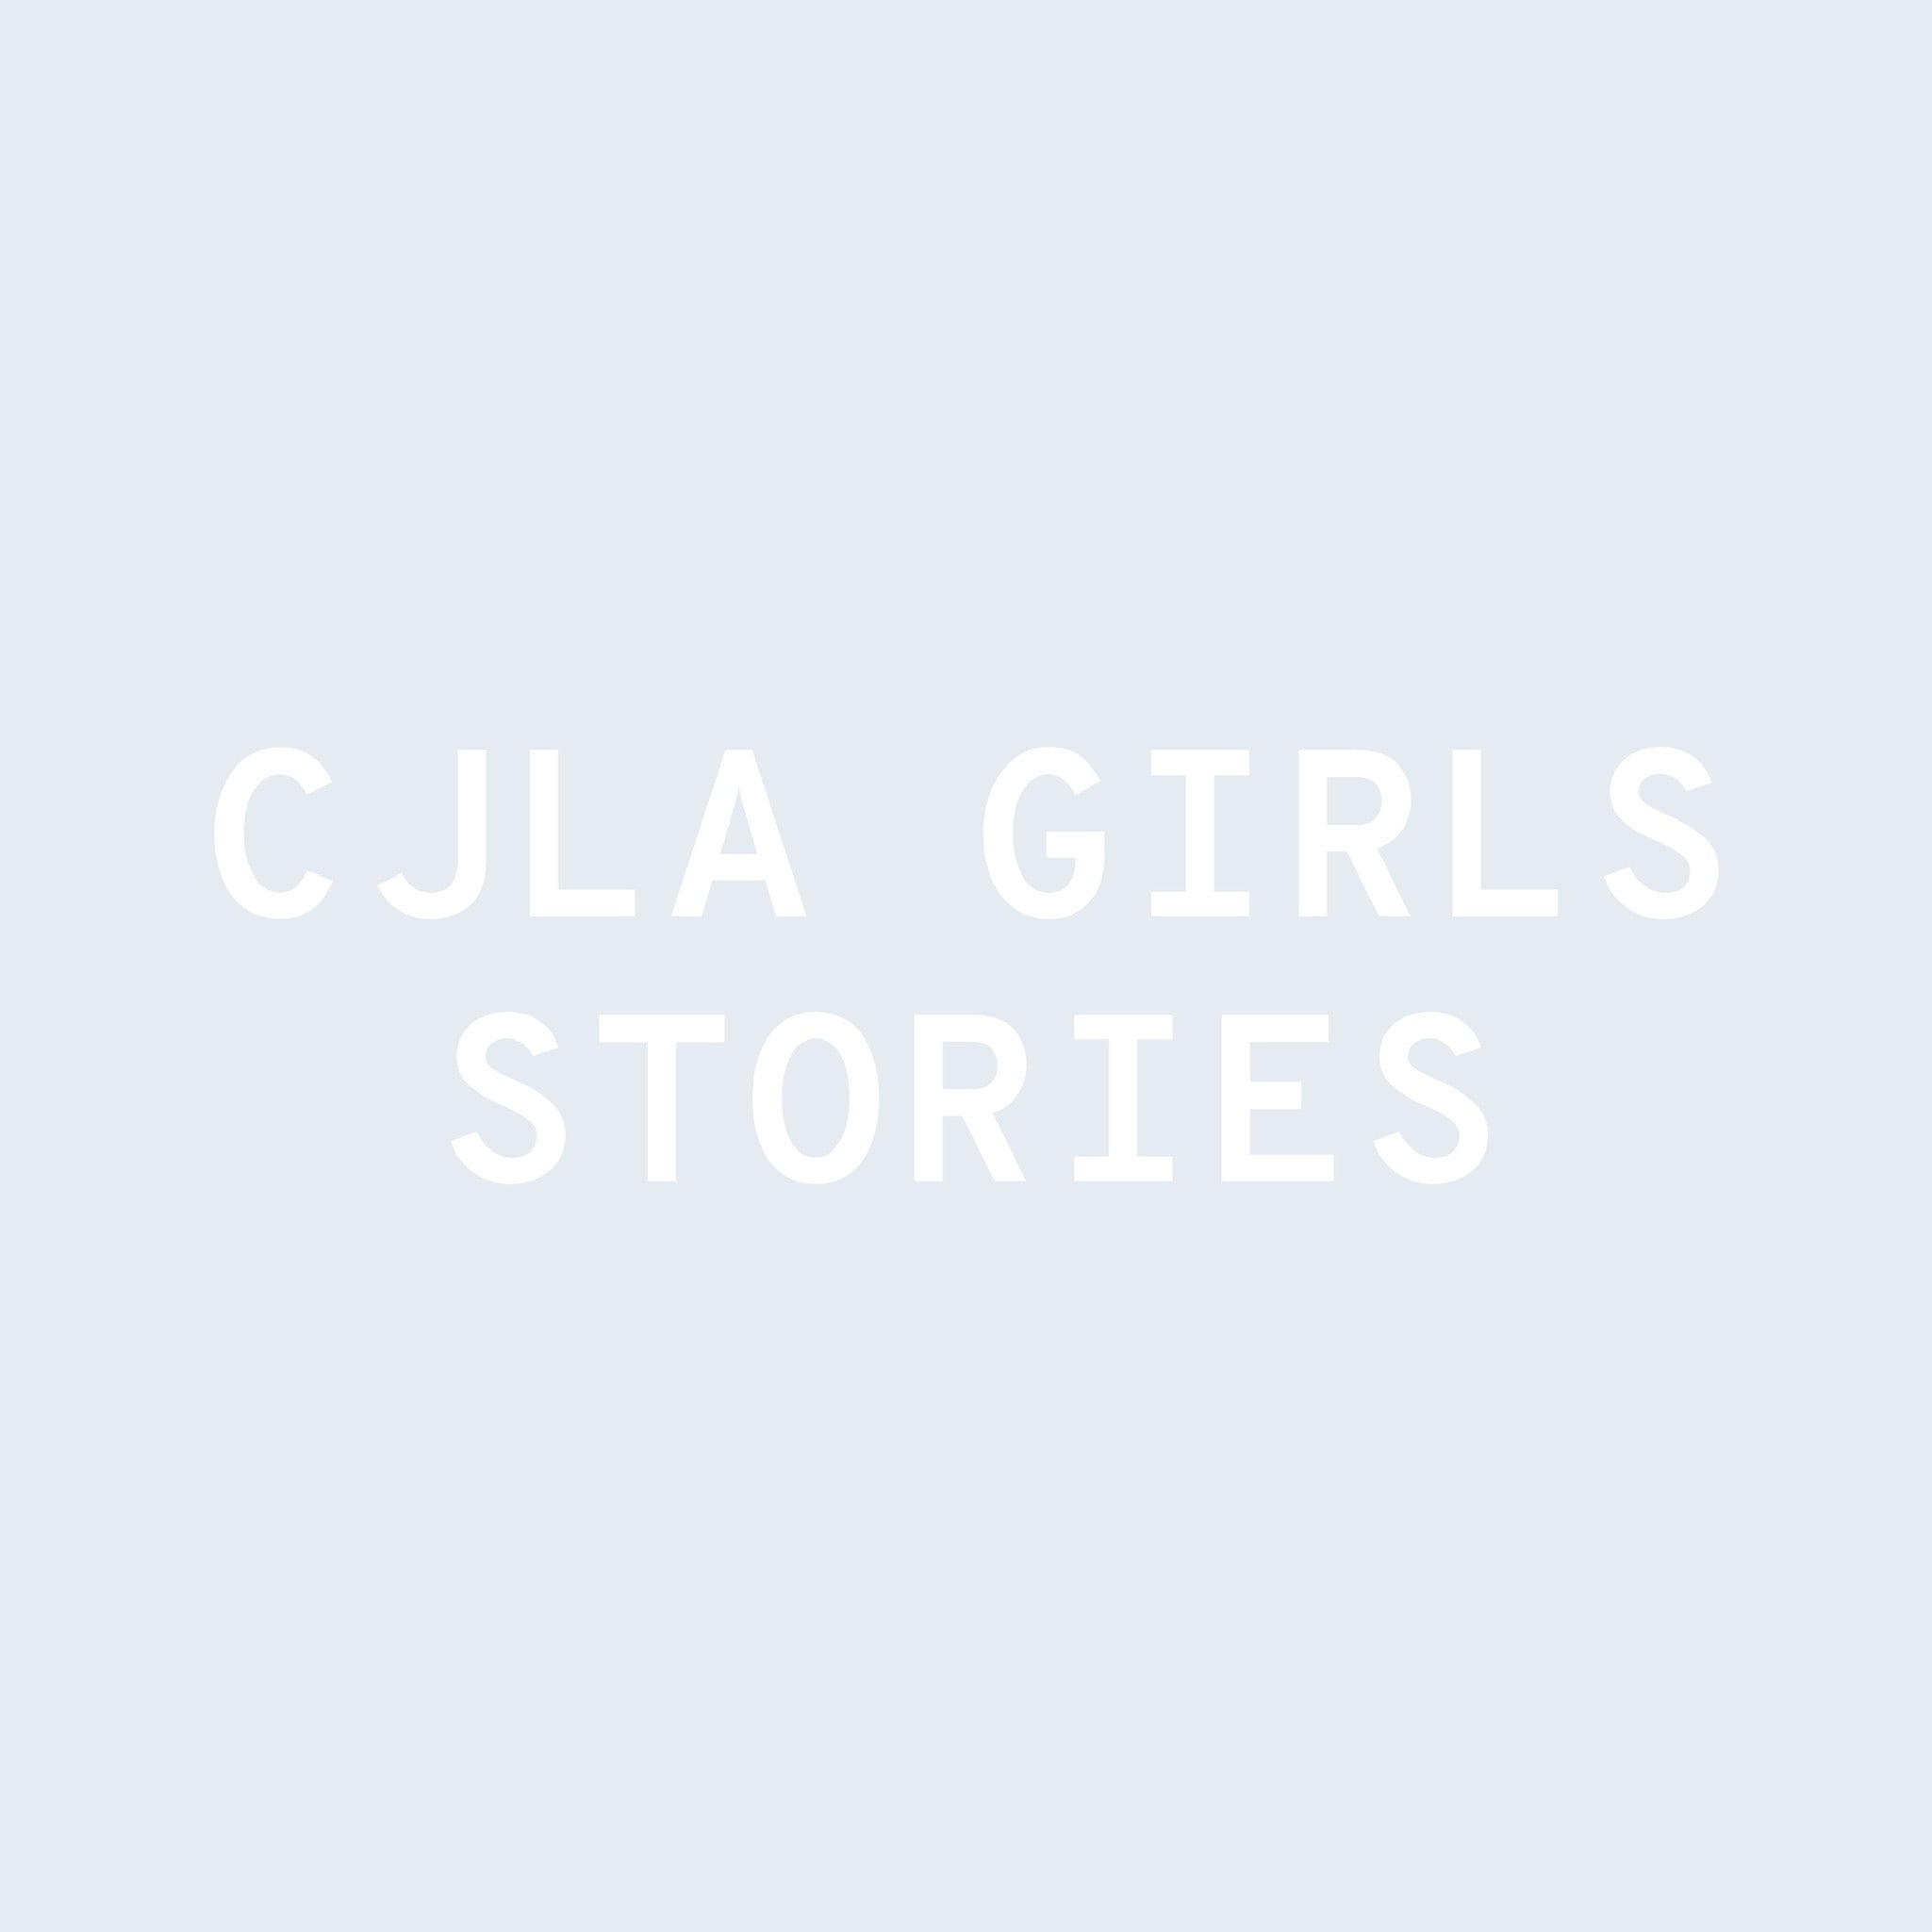 CJLA Girls Story: Jessica Ko